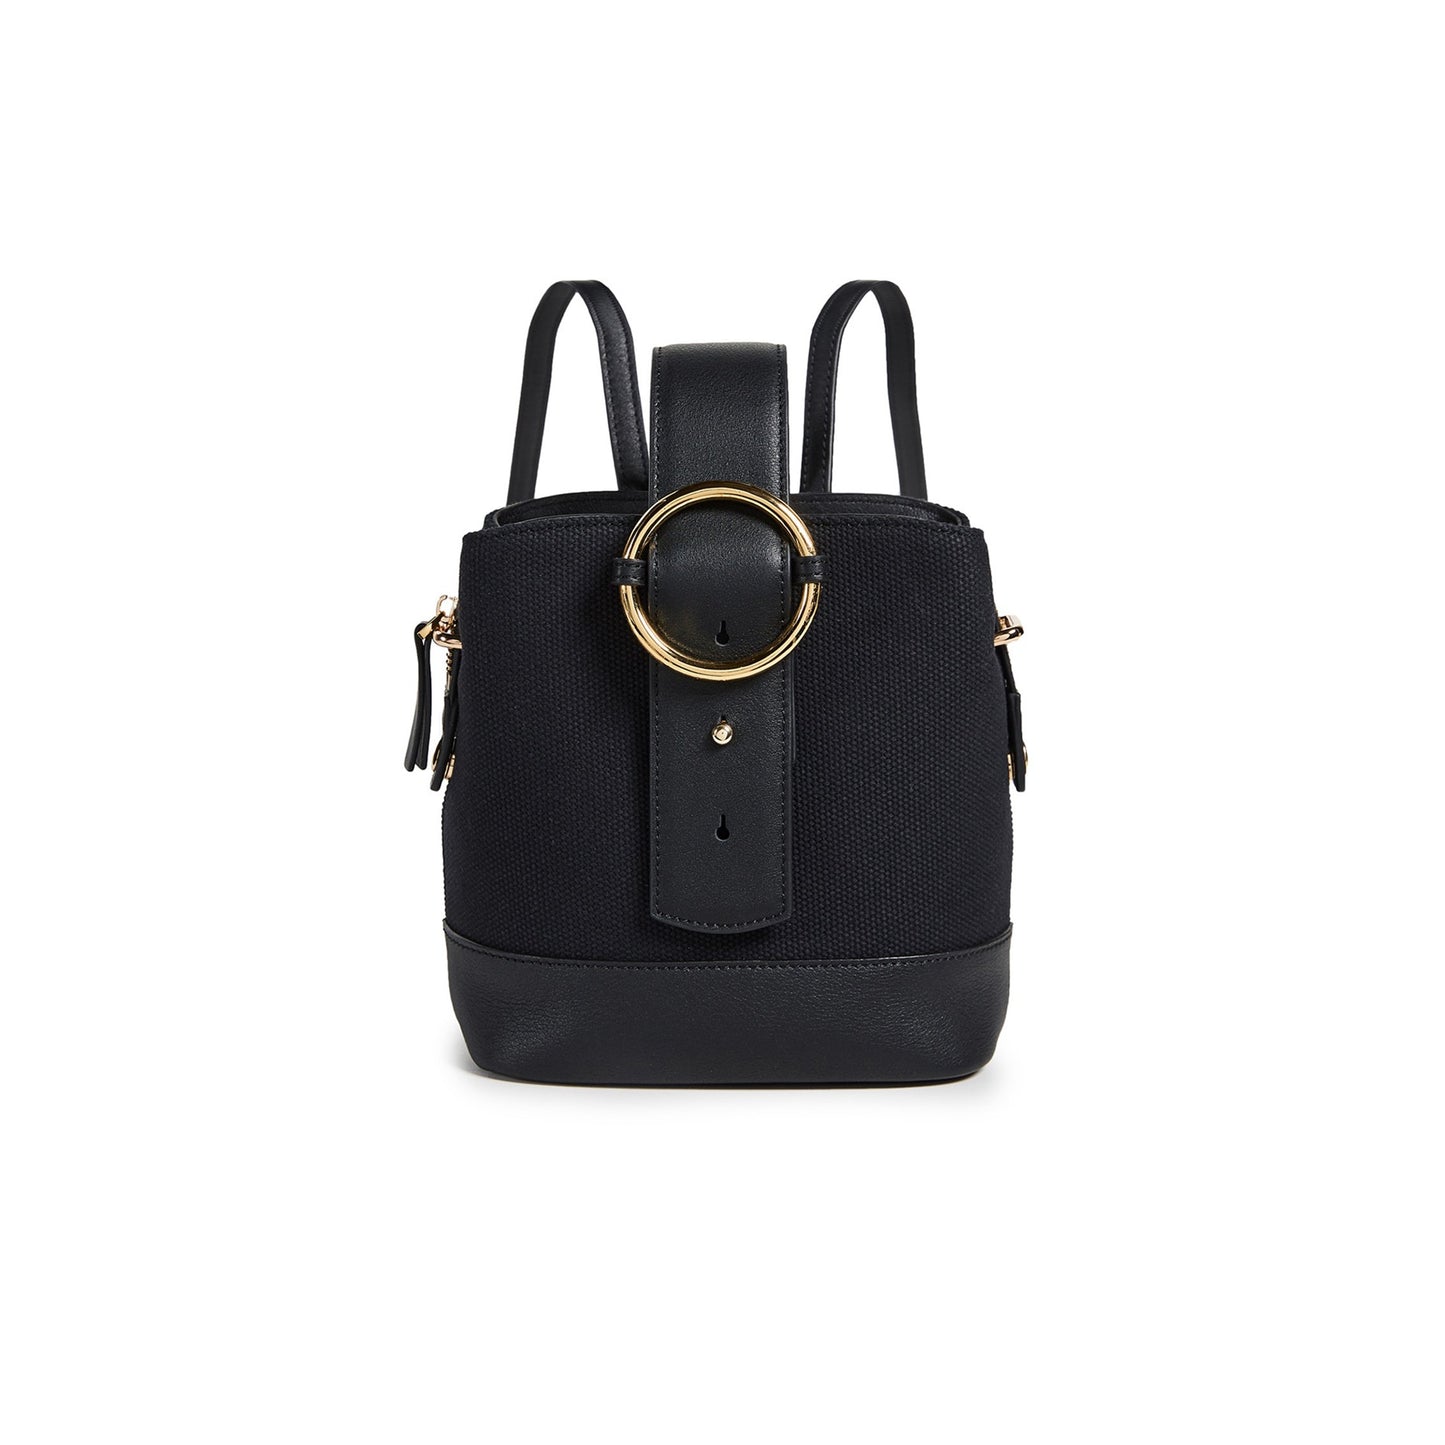 Addicted Mini Backpack in Black Gold| Parisa Wang